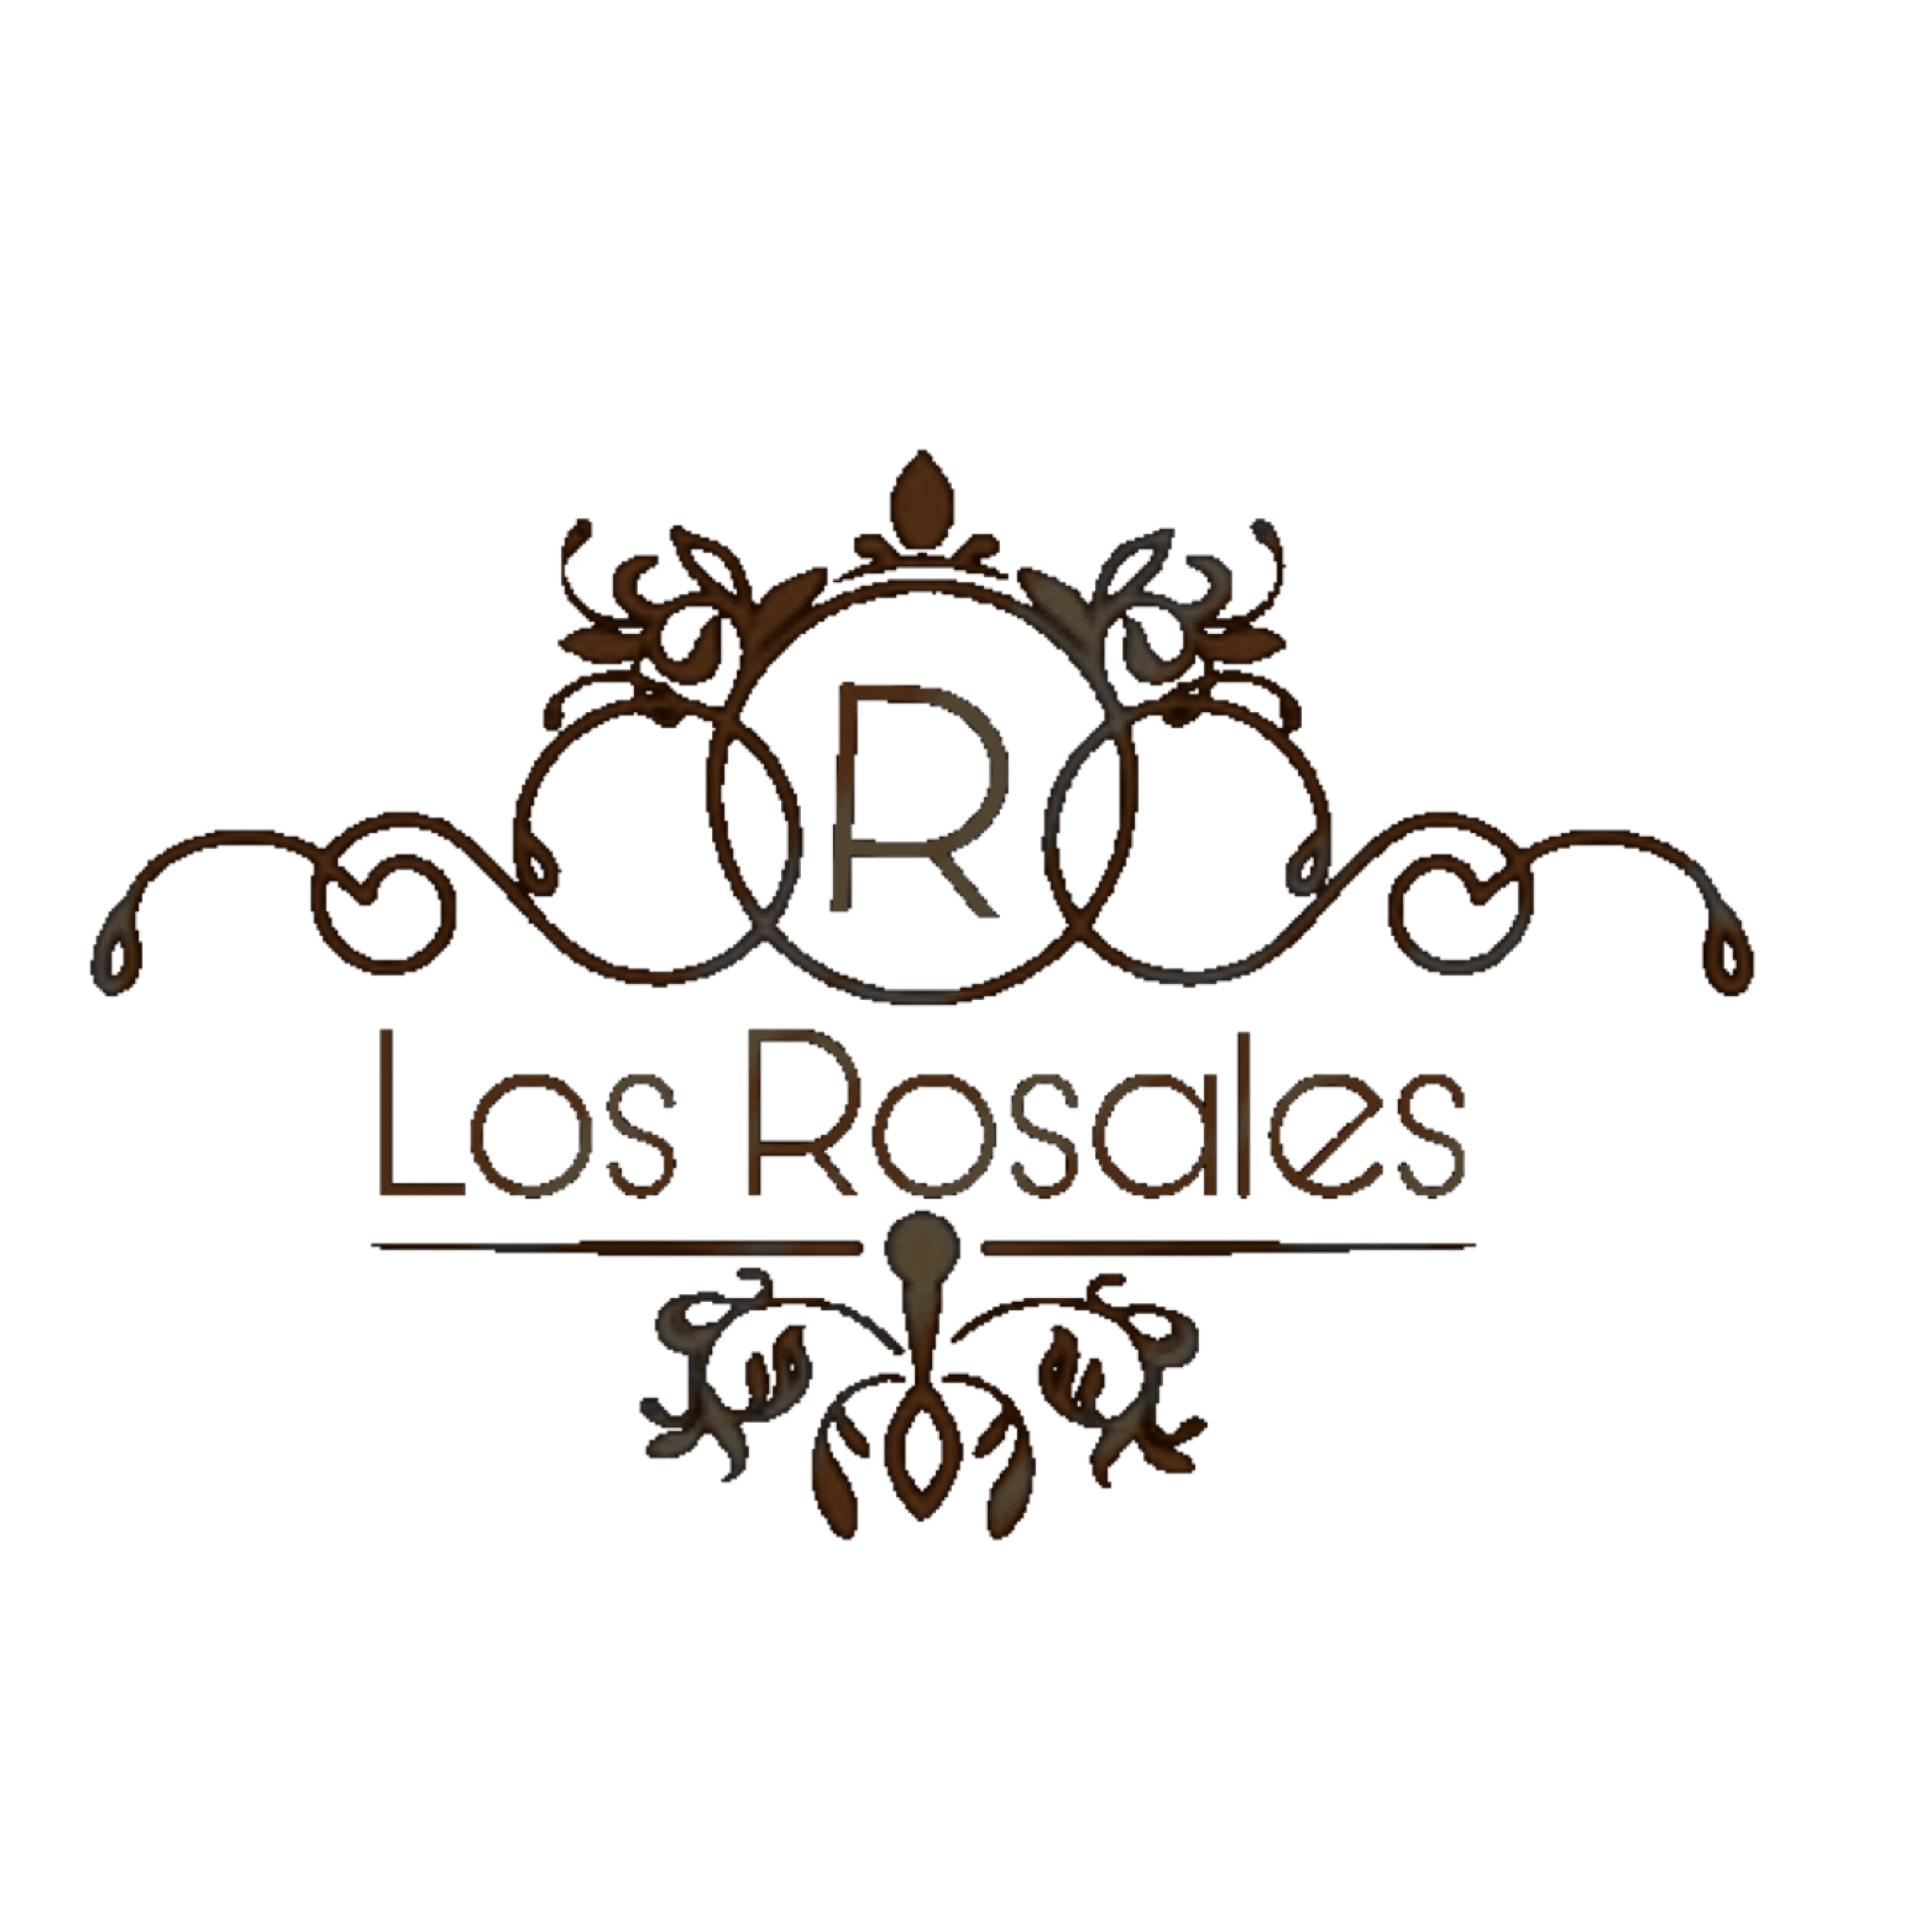 Rancho Los Rosales